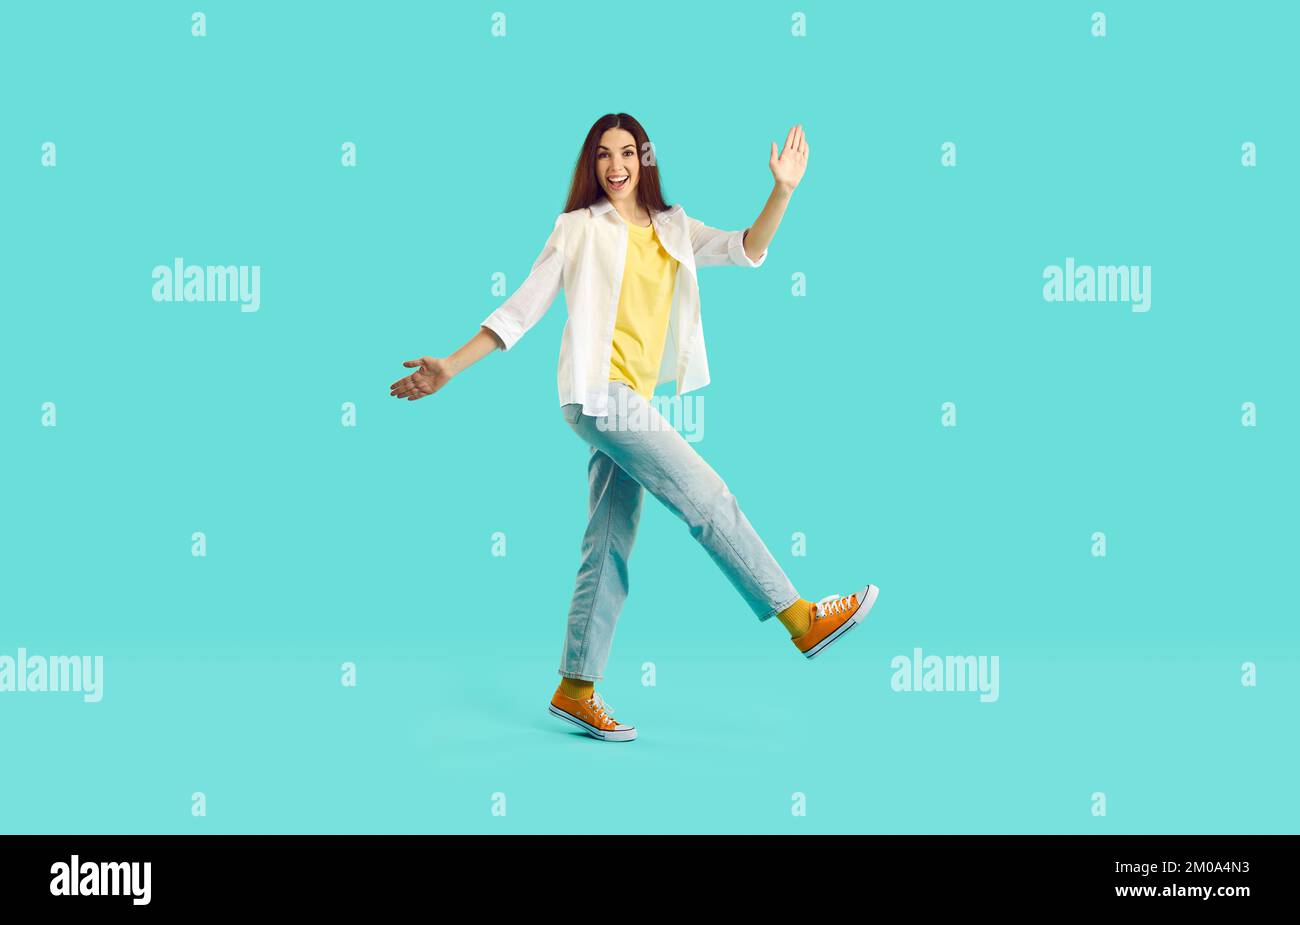 Fröhliche, sorgenfreie junge Frau, die Spaß und lustige Spaziergänge hat, isoliert auf türkisfarbenem Hintergrund. Stockfoto